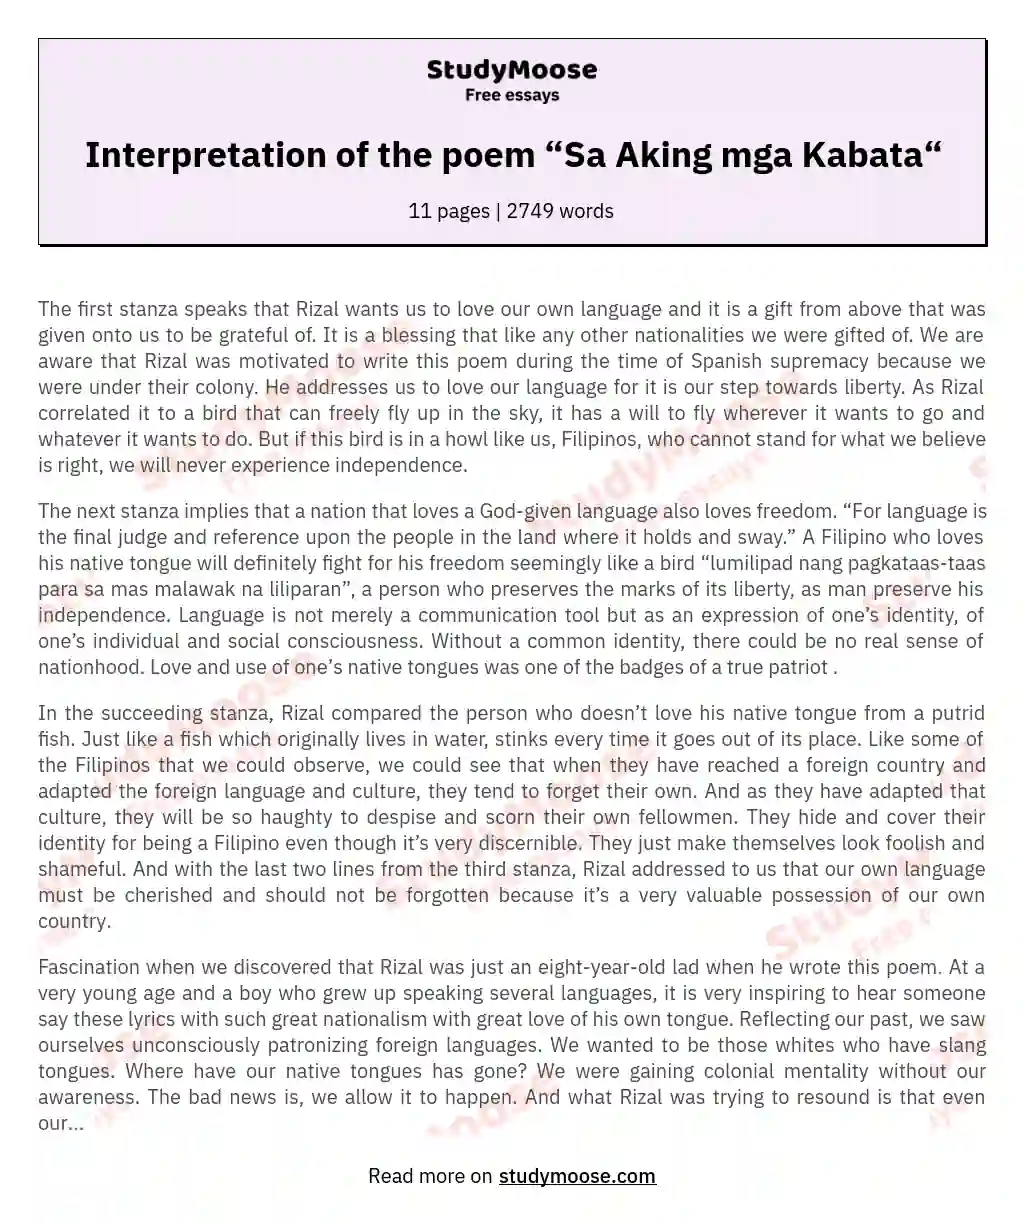 Interpretation of the poem “Sa Aking mga Kabata“ essay